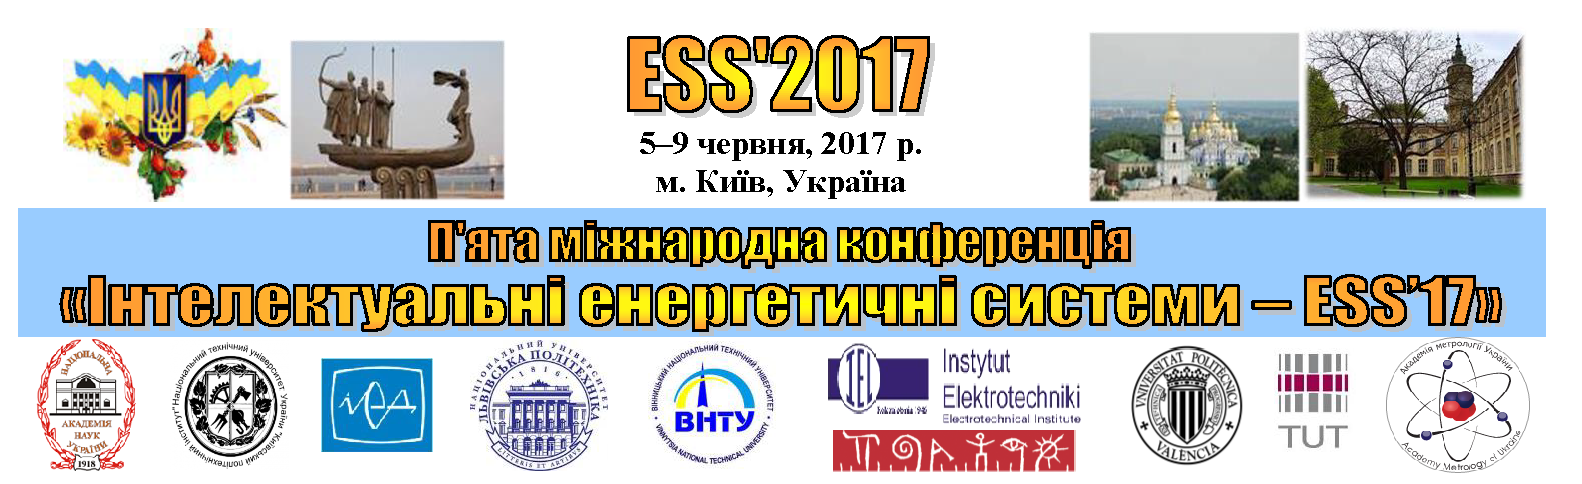 Четверта міжнародна конференція "Інтелектуальні енергетичні системи - ESS'15"